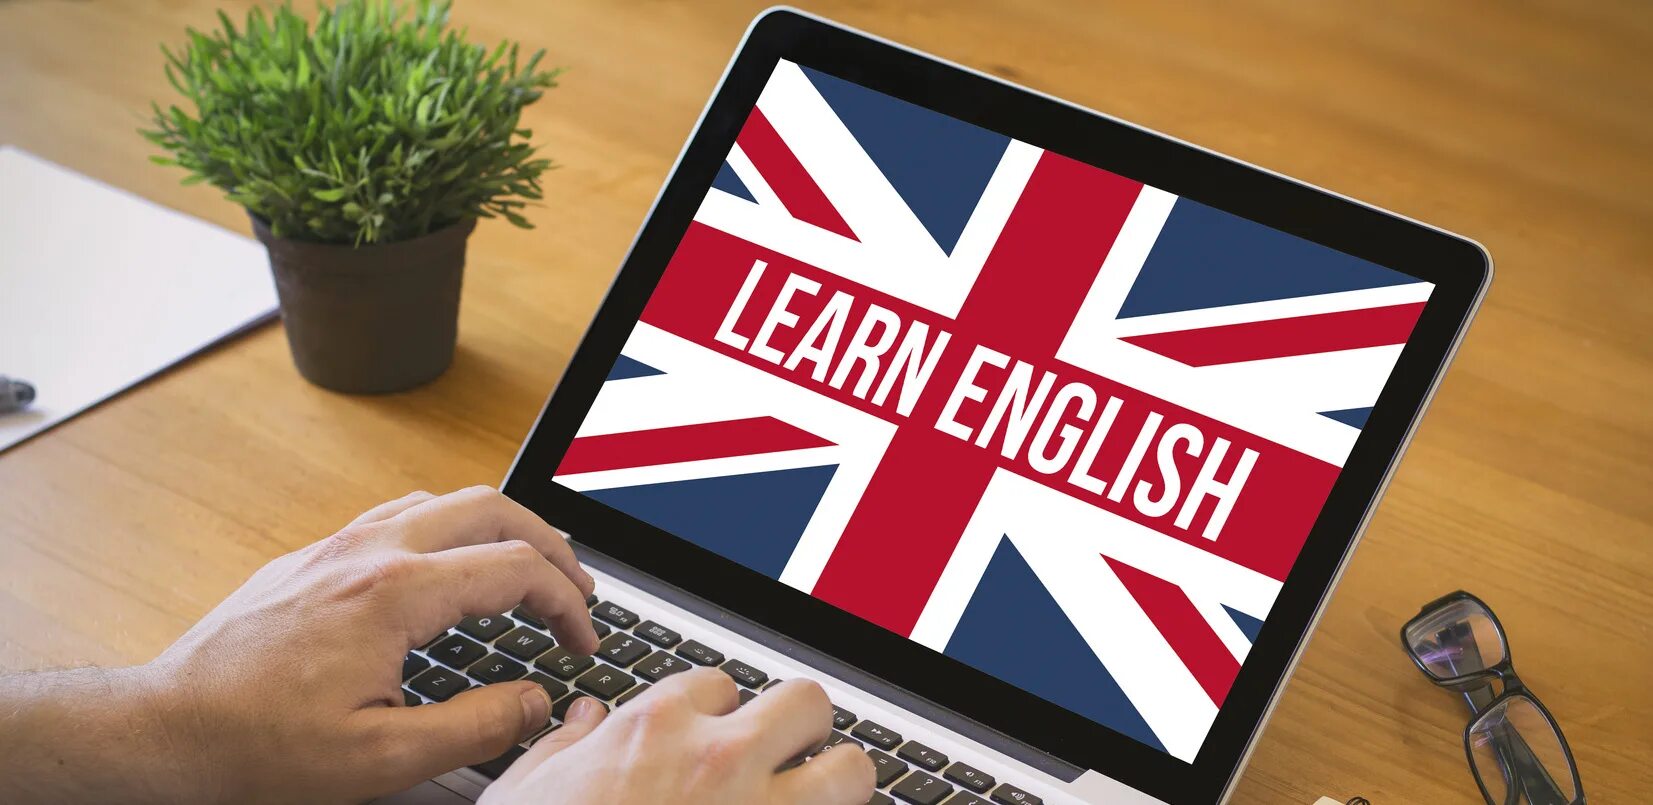 Английский язык. Изучение английского. Английский на компьютере. Пути изучения английского языка с помощью интернет.